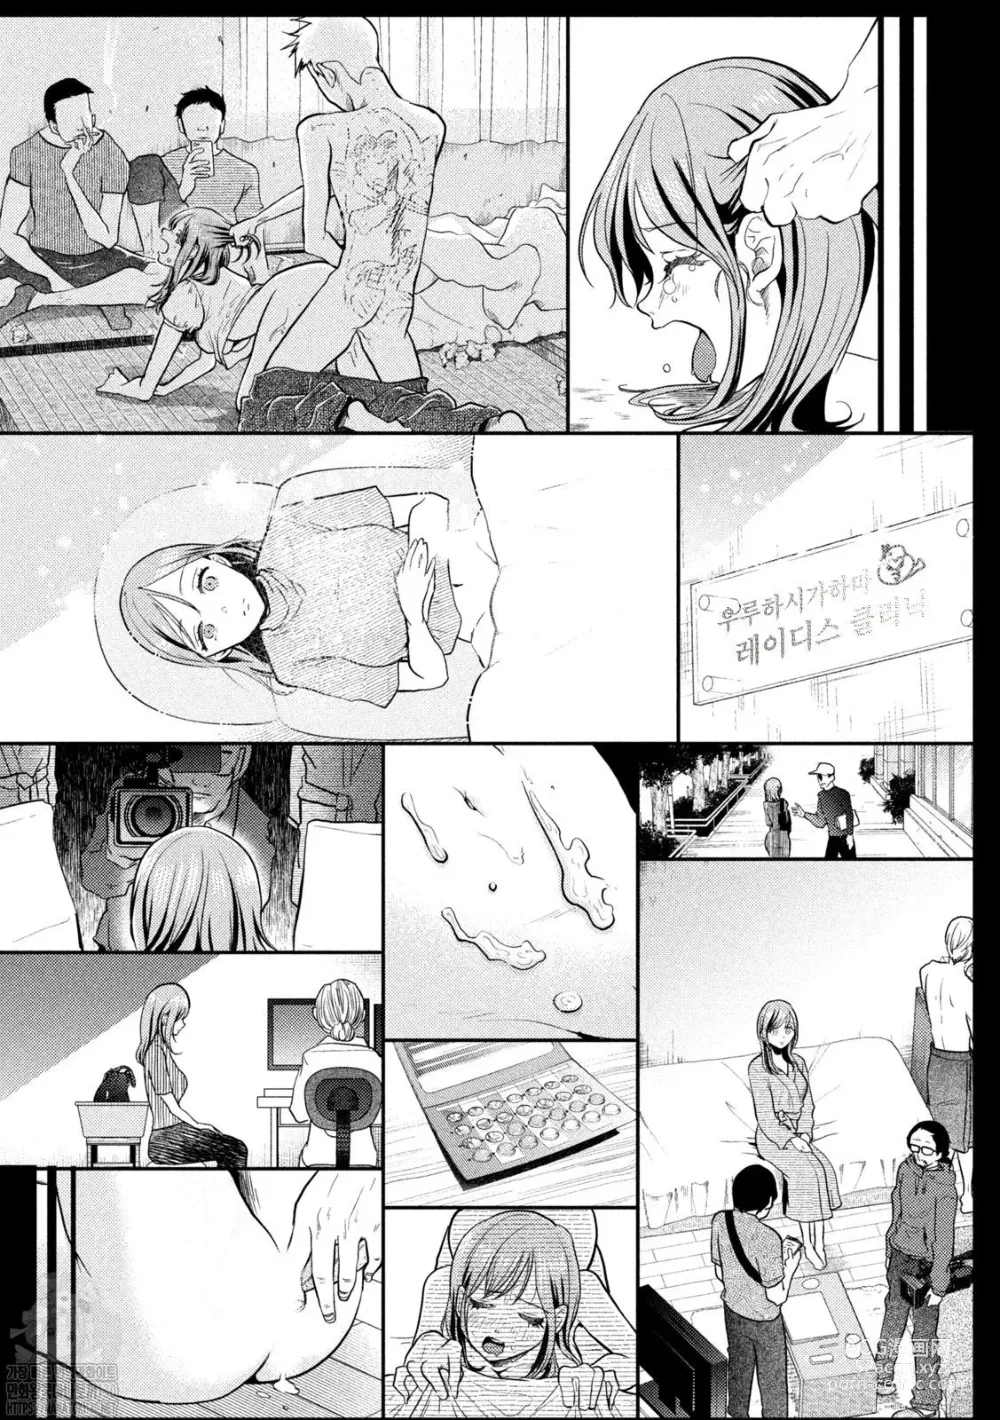 Page 30 of manga Haha wa Tsuyoi.